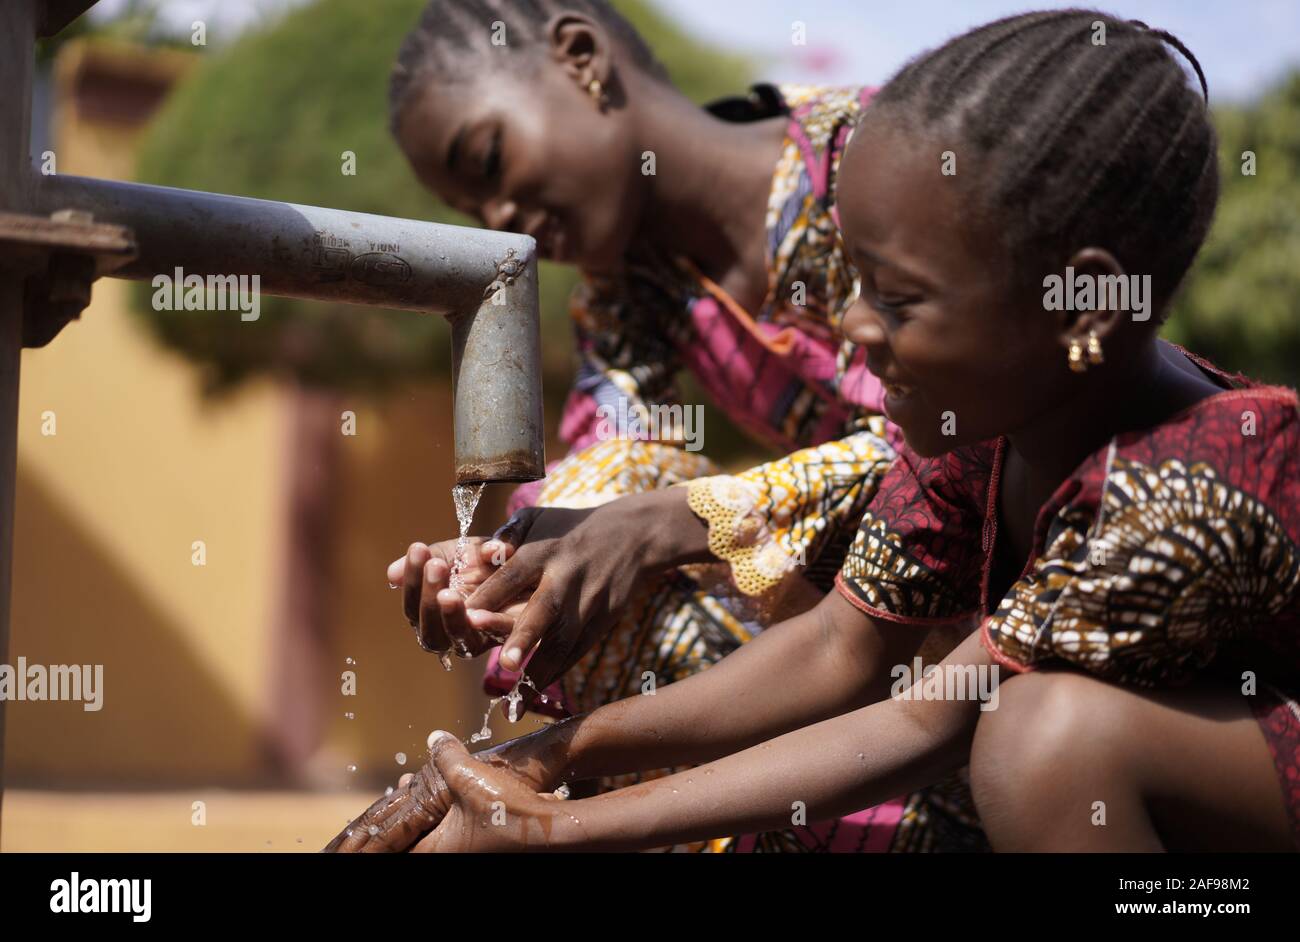 Des enfants africains étonnants les filles boivent de l'eau pure à partir de la pompe - Journée mondiale de l'eau Banque D'Images